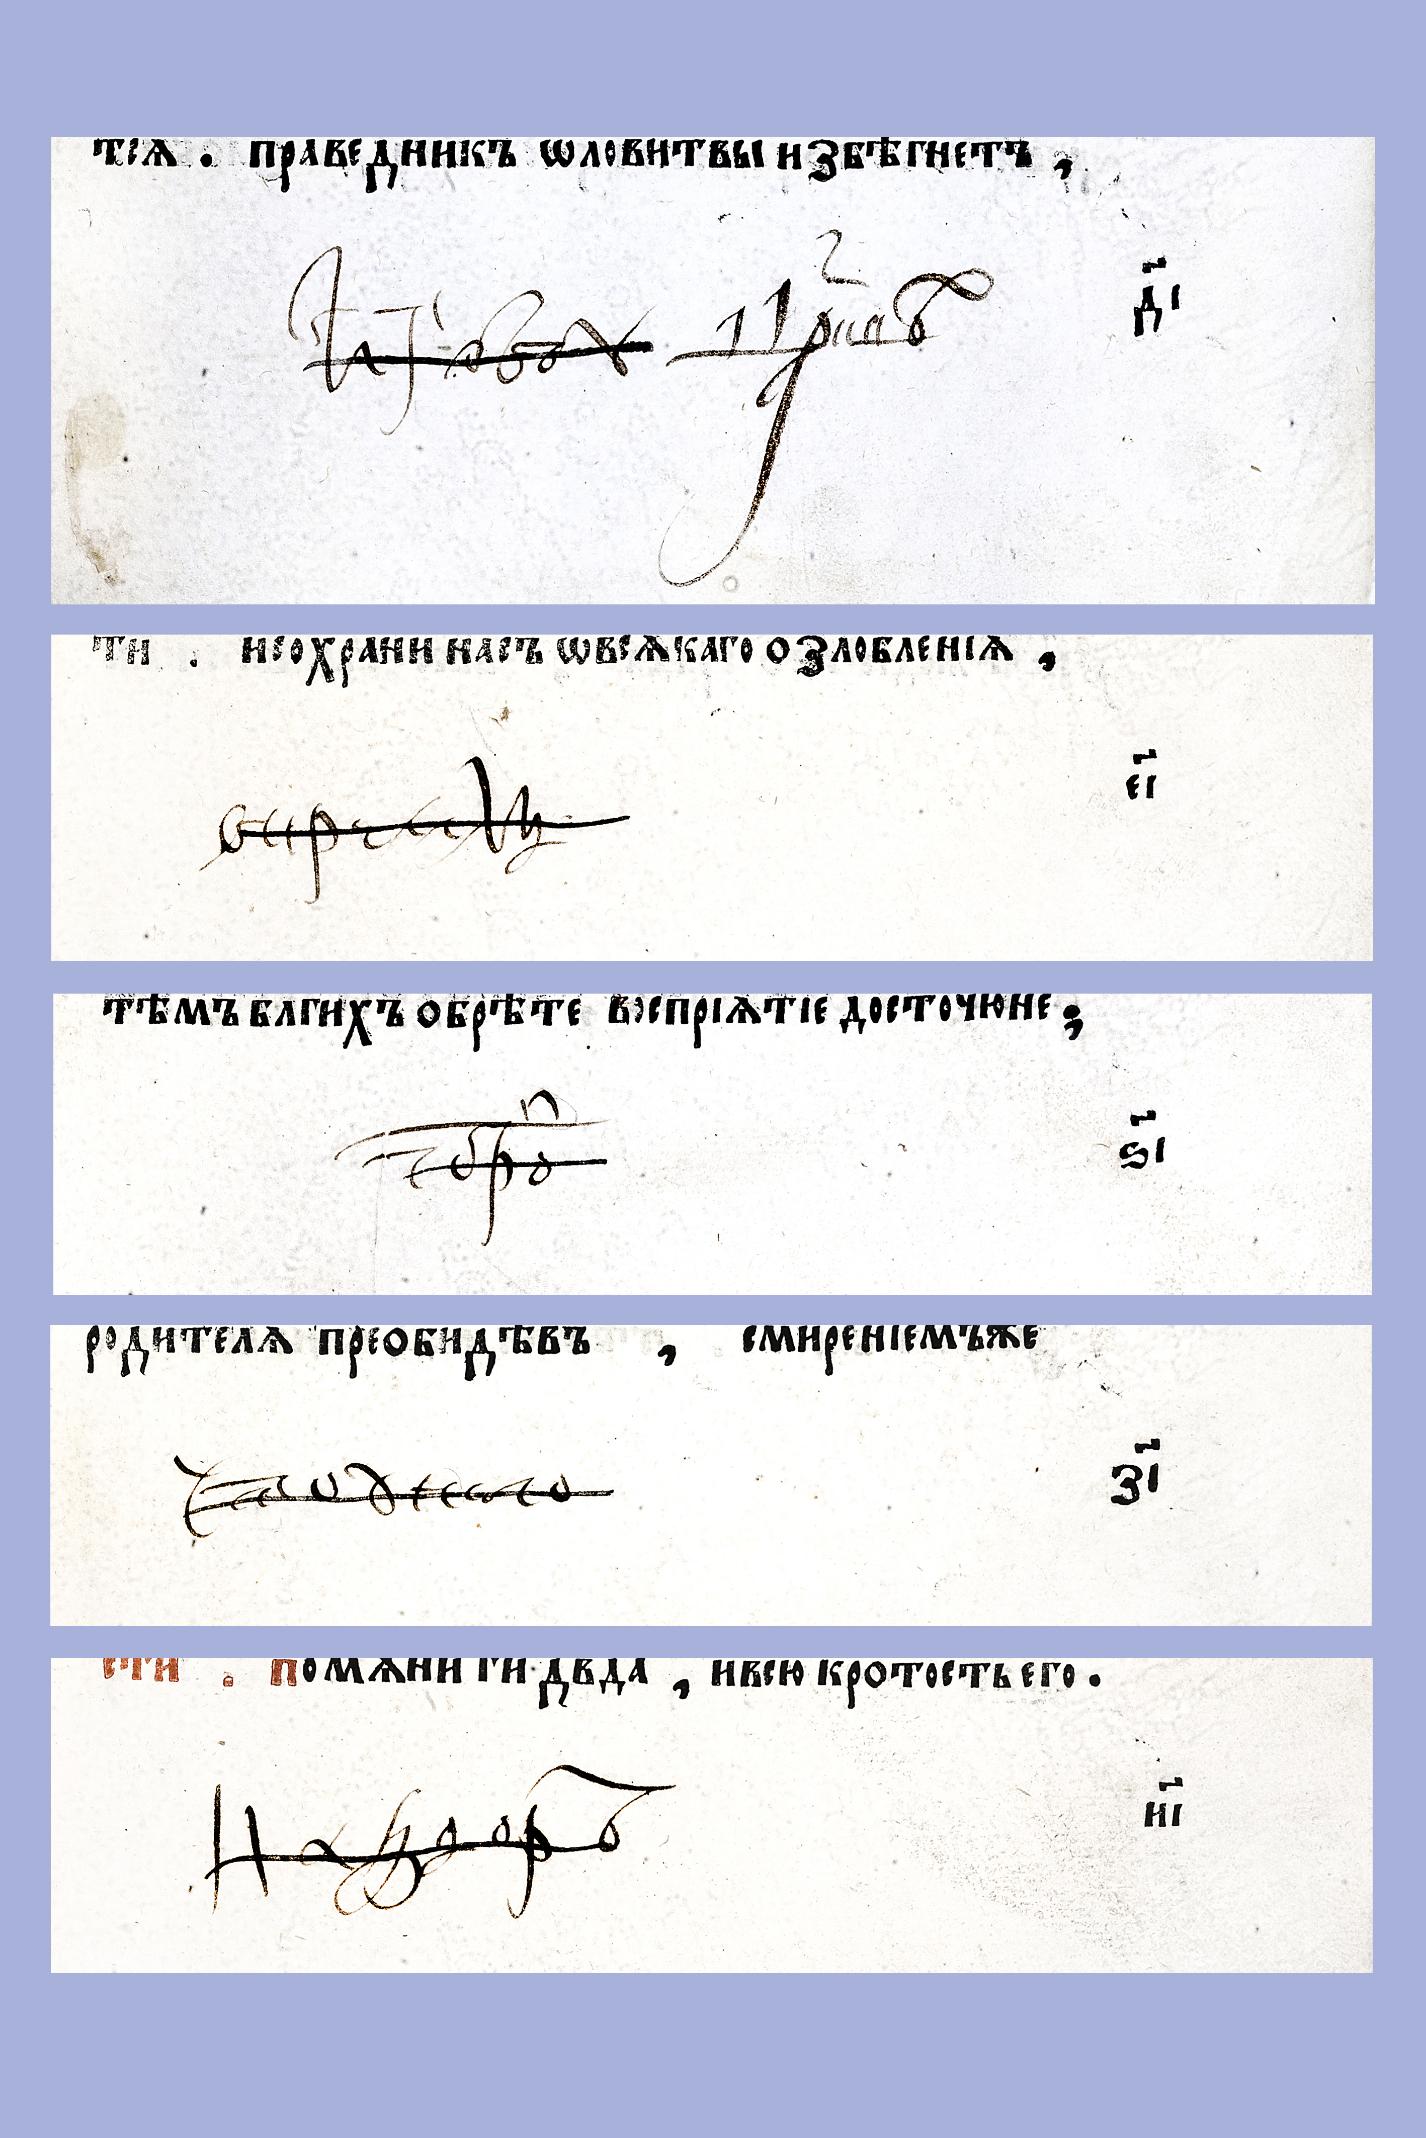 1.IX. Фрагмент вкладной записи 1648/1649 г. боярина Шереметева (л. 14−18)